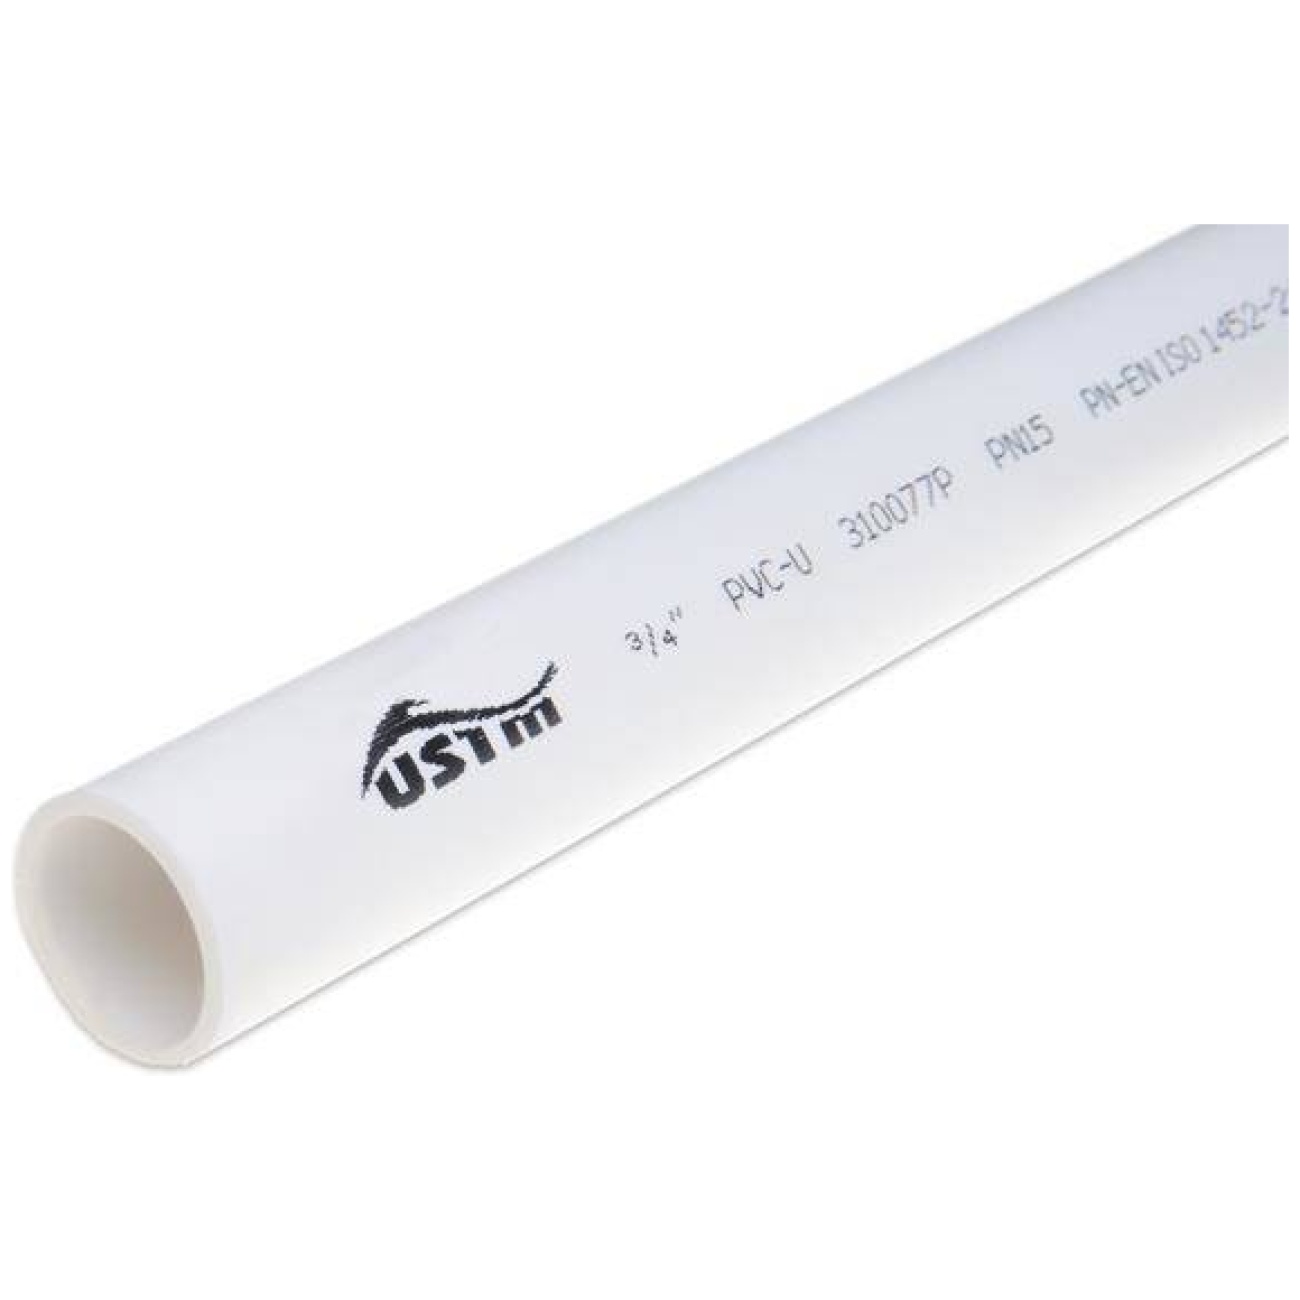 Rura do odprowadzenia skroplin PVC, sztywna 1/2" długość 3mb - UST-M / NIBCO